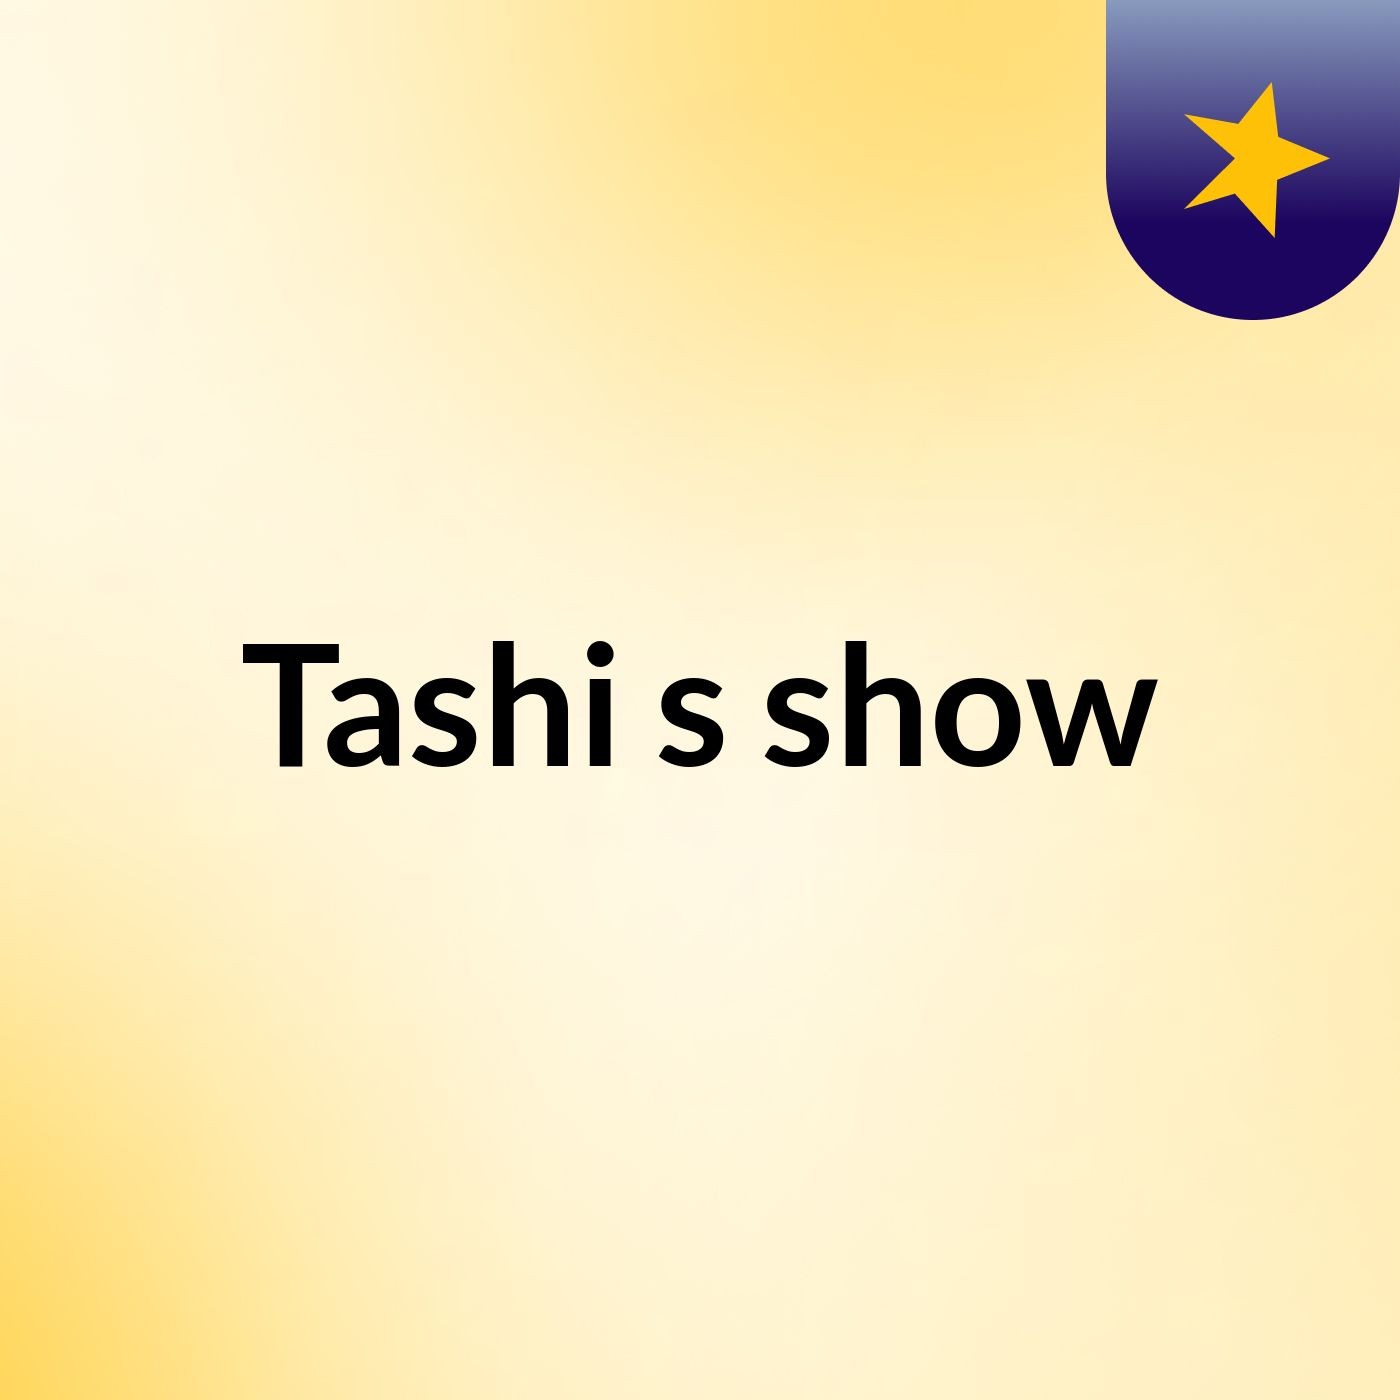 Tashi's show